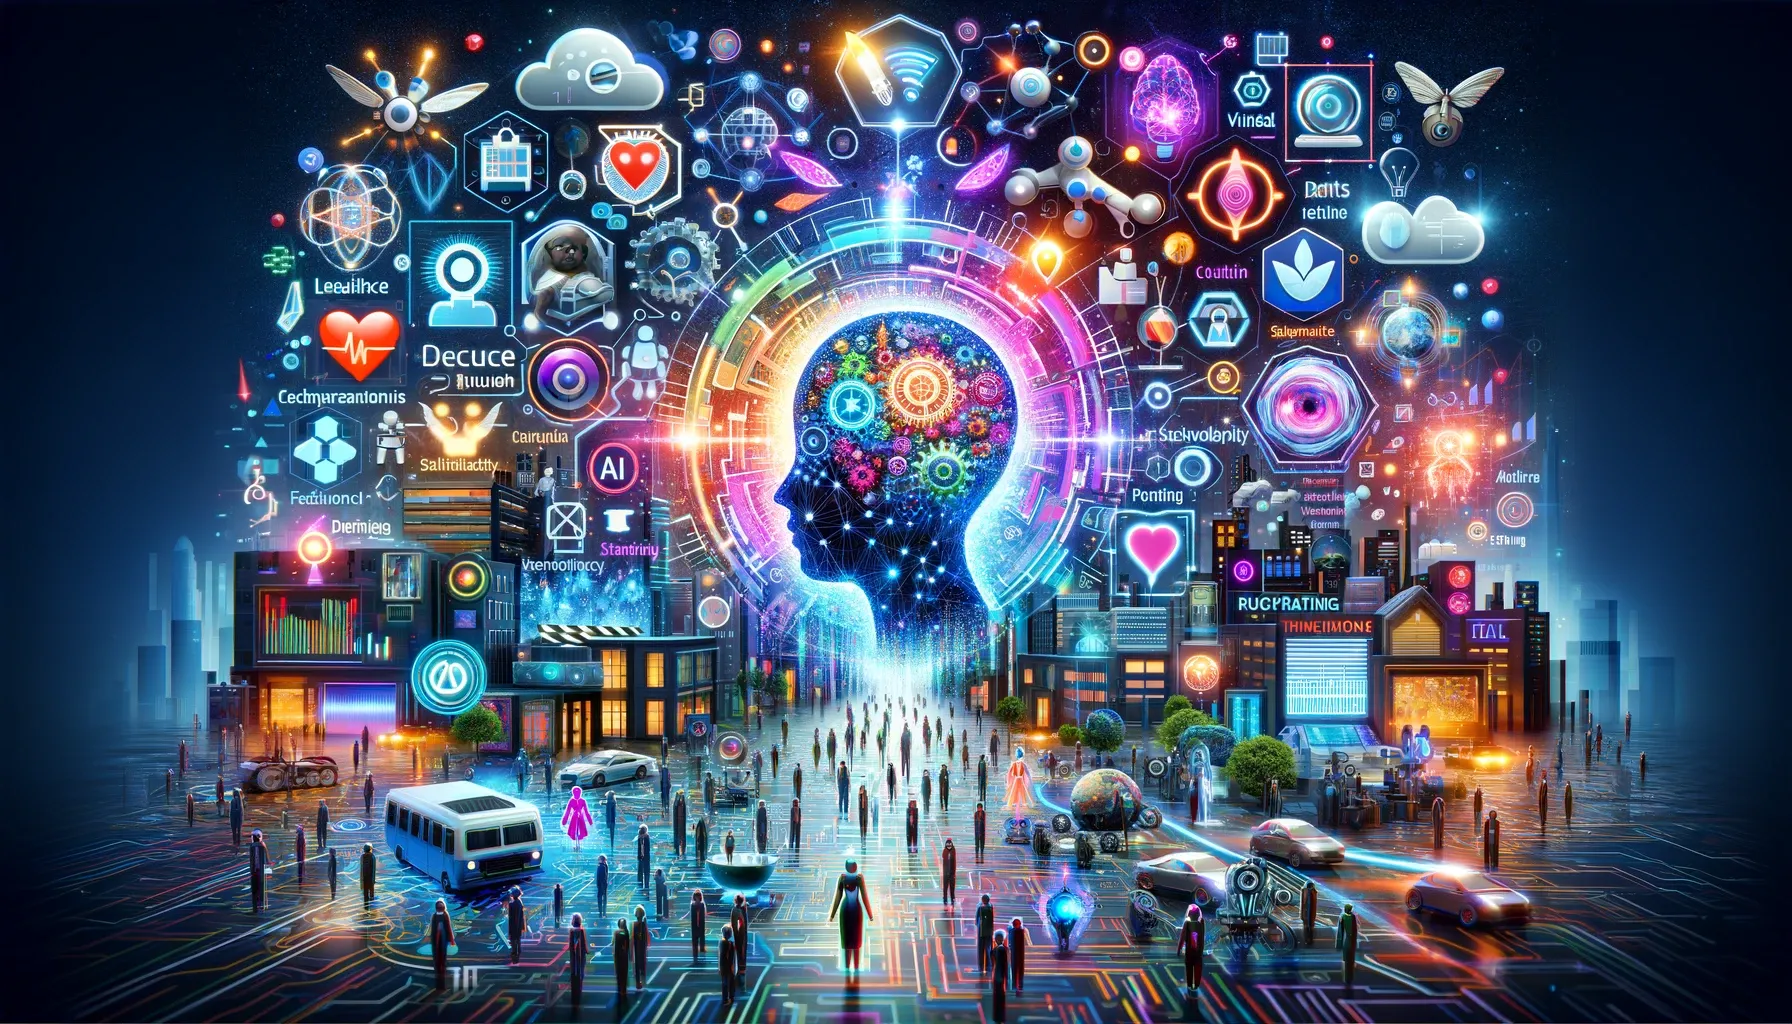 La imagen representa un collage digital futurista y vibrante que ilustra el impacto de la inteligencia artificial en diferentes industrias. En la escena, se pueden observar representaciones simbólicas de la IA en diversos sectores como la salud, educación, marketing y ciberseguridad. La imagen está llena de actividad, mostrando herramientas de IA transformando estos campos.